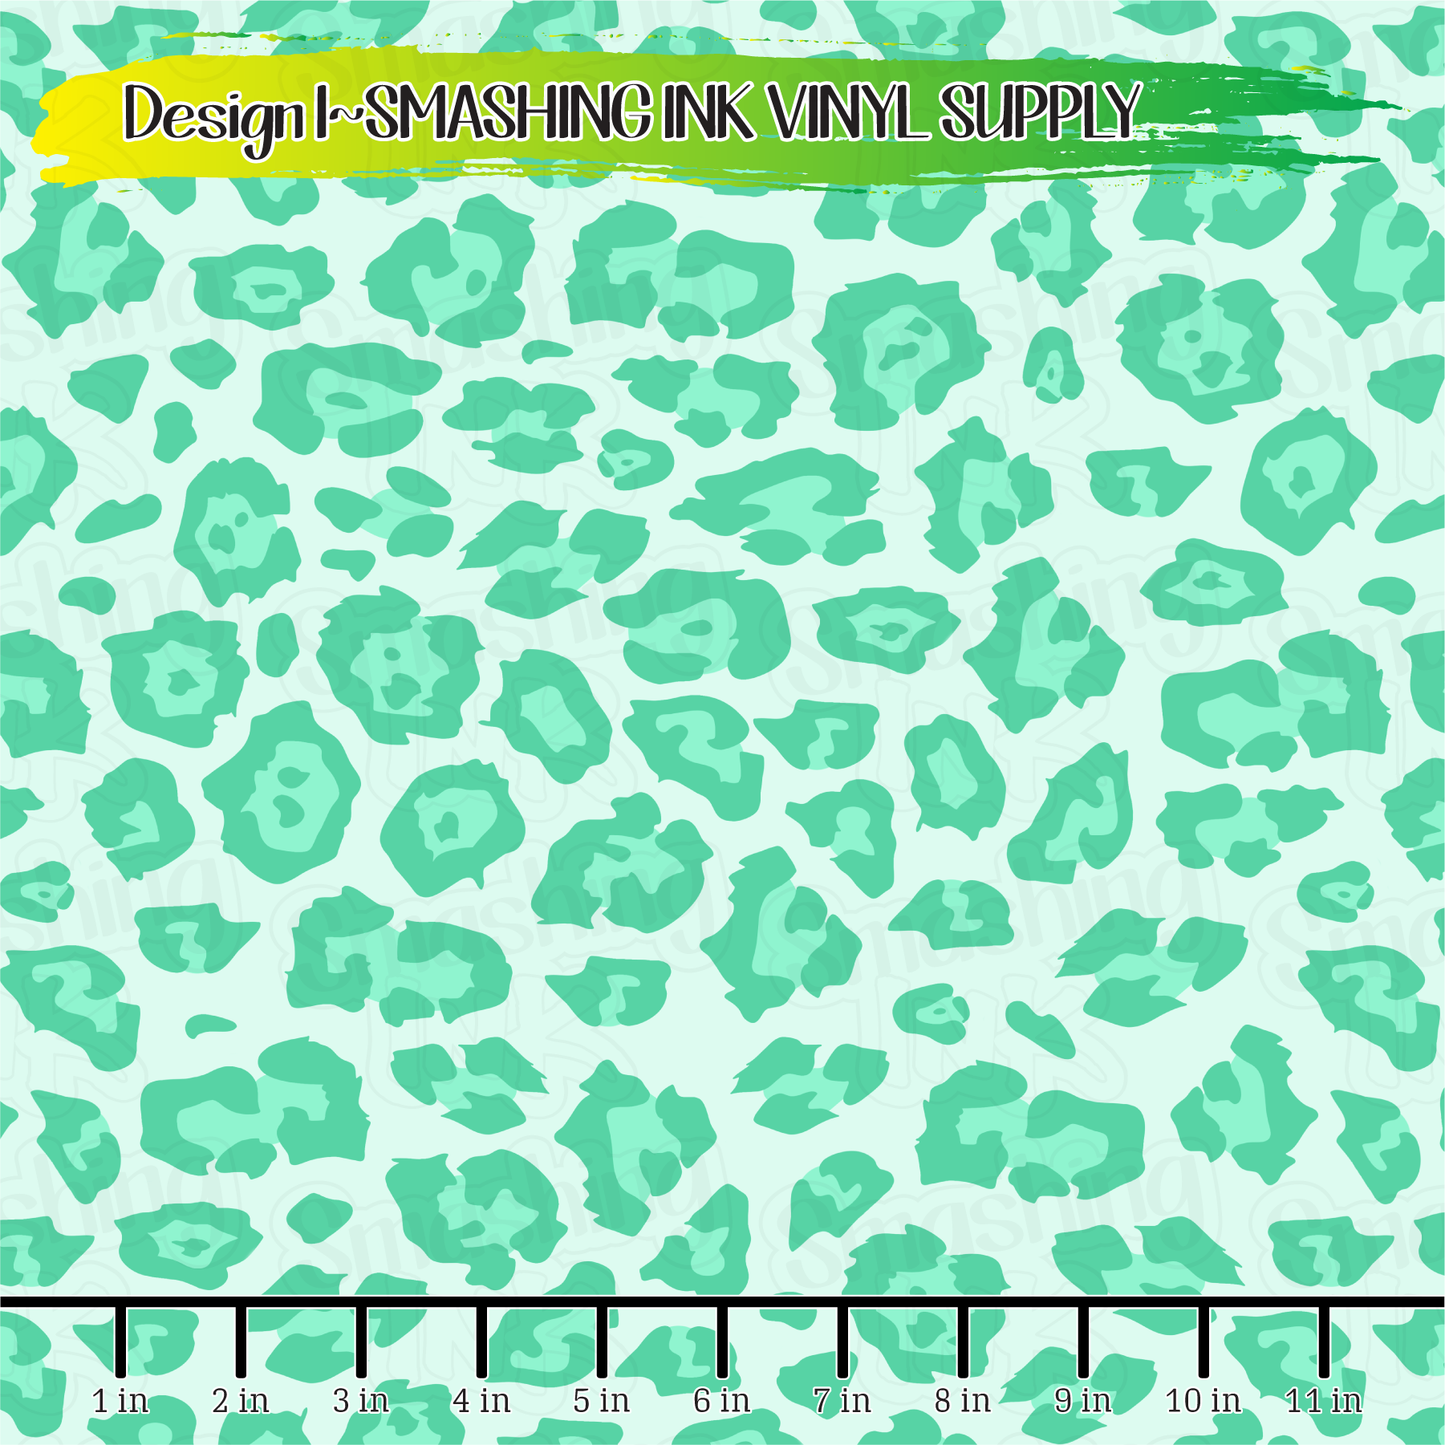 Mint Cheetah ★ Pattern Vinyl | Faux Leather | Sublimation (TAT 3 BUS DAYS)